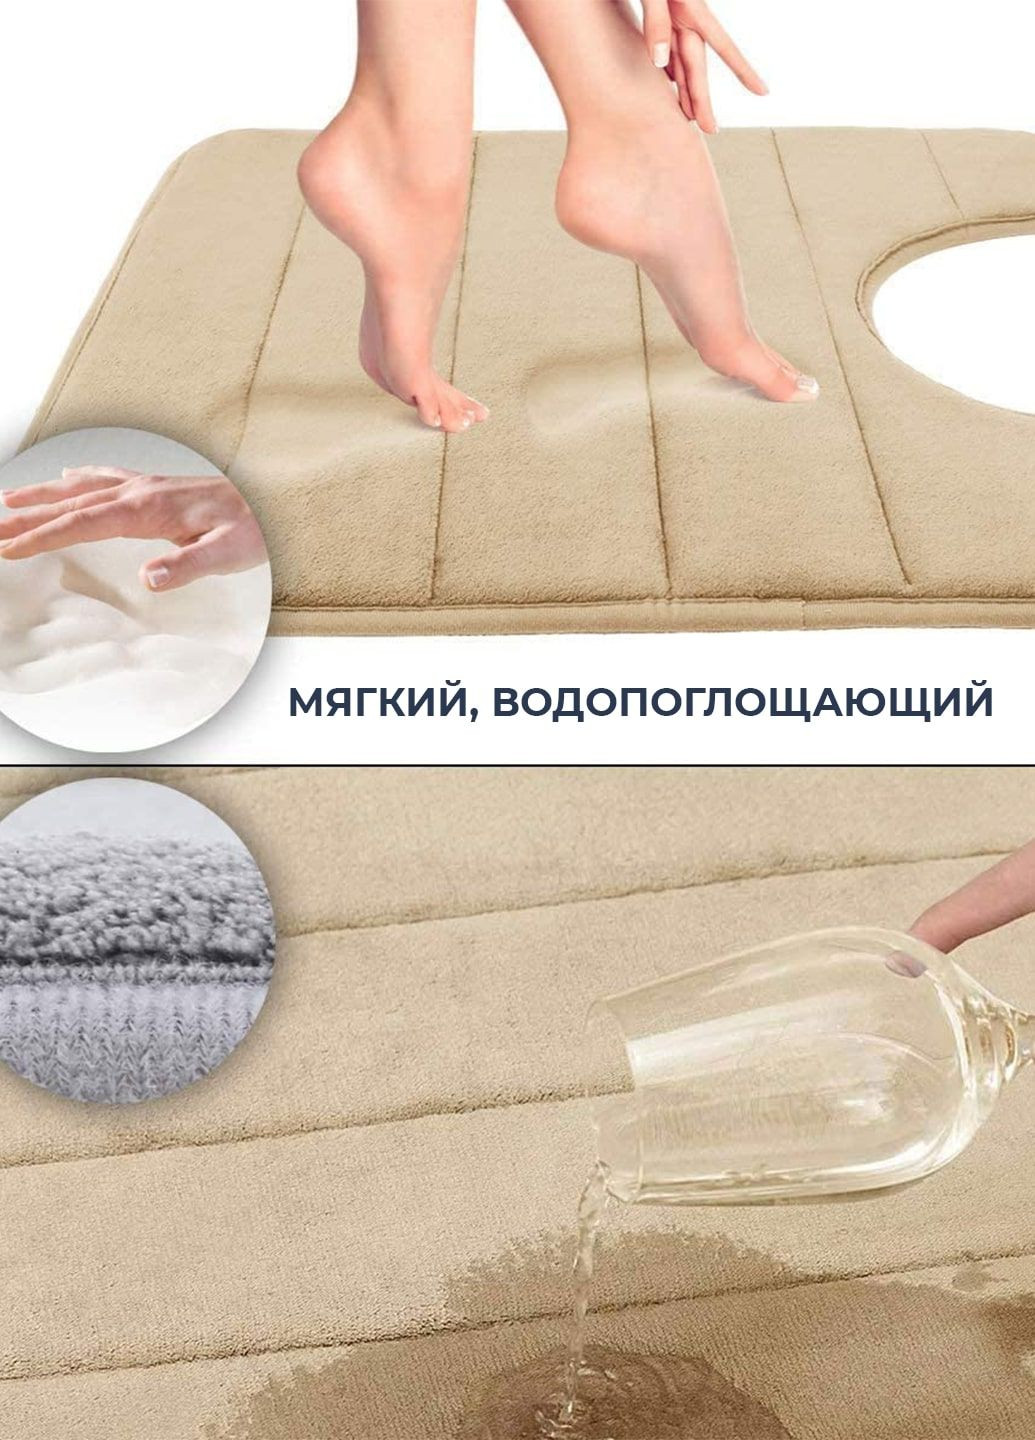 Современный коврик для туалета с эффектом памяти - U-контурный 50 х 50 см Бежевый - Антискользящий, мягкий, водопоглощающий Aquarius (281327197)